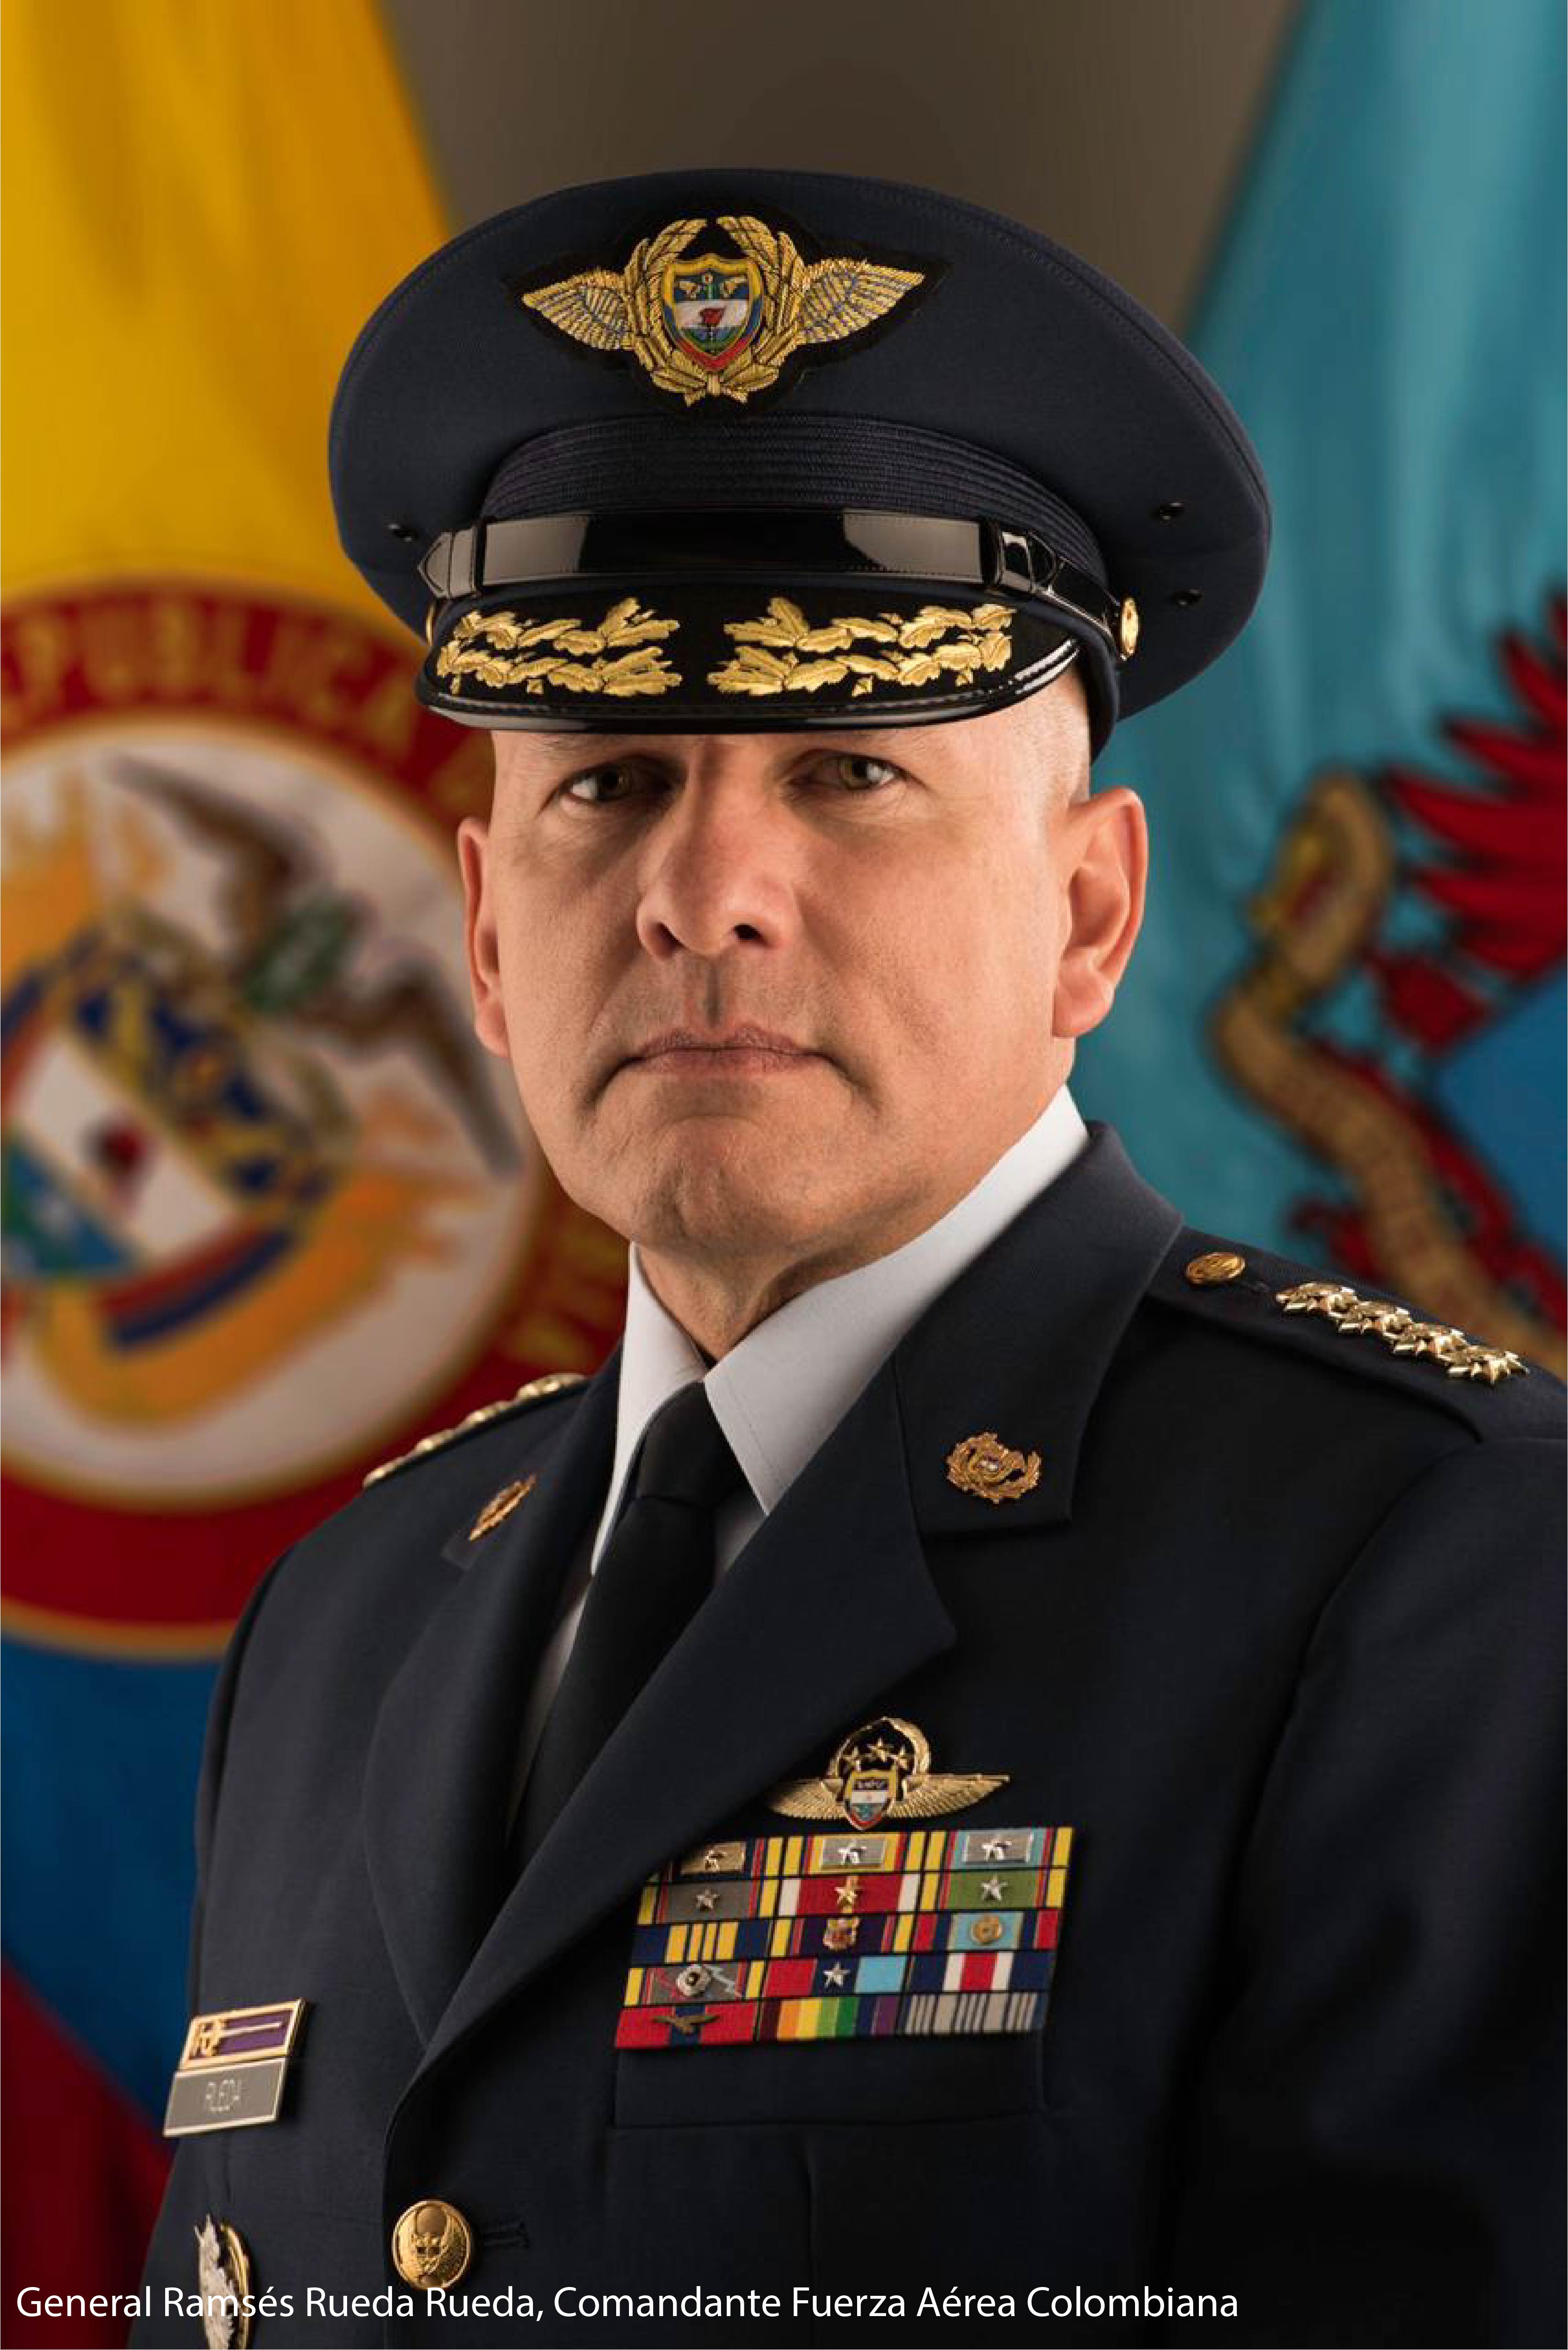 General Ramsés Rueda Rueda Comandante Fuerza Aérea Colombiana